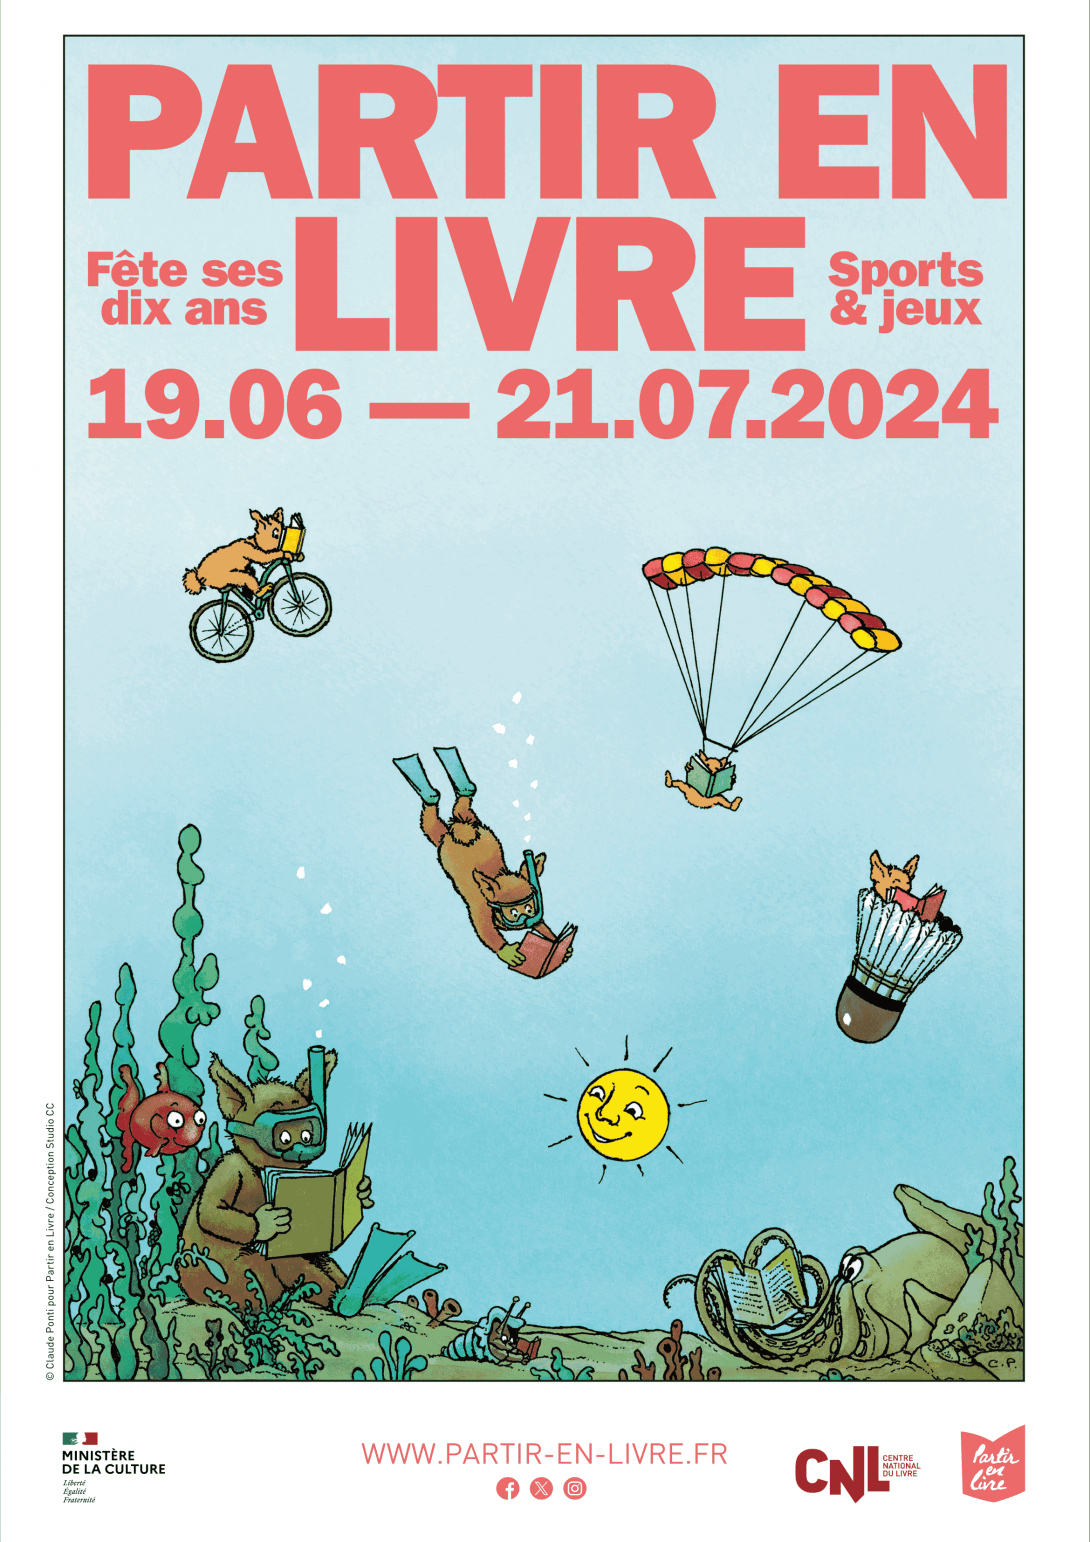 ‘PARTIR EN LIVRE  - Fête ses six ans - Sports & jeux - 19.06 — 21.07.2024 - WWW.PARTIR-EN-LIVRE.FR’